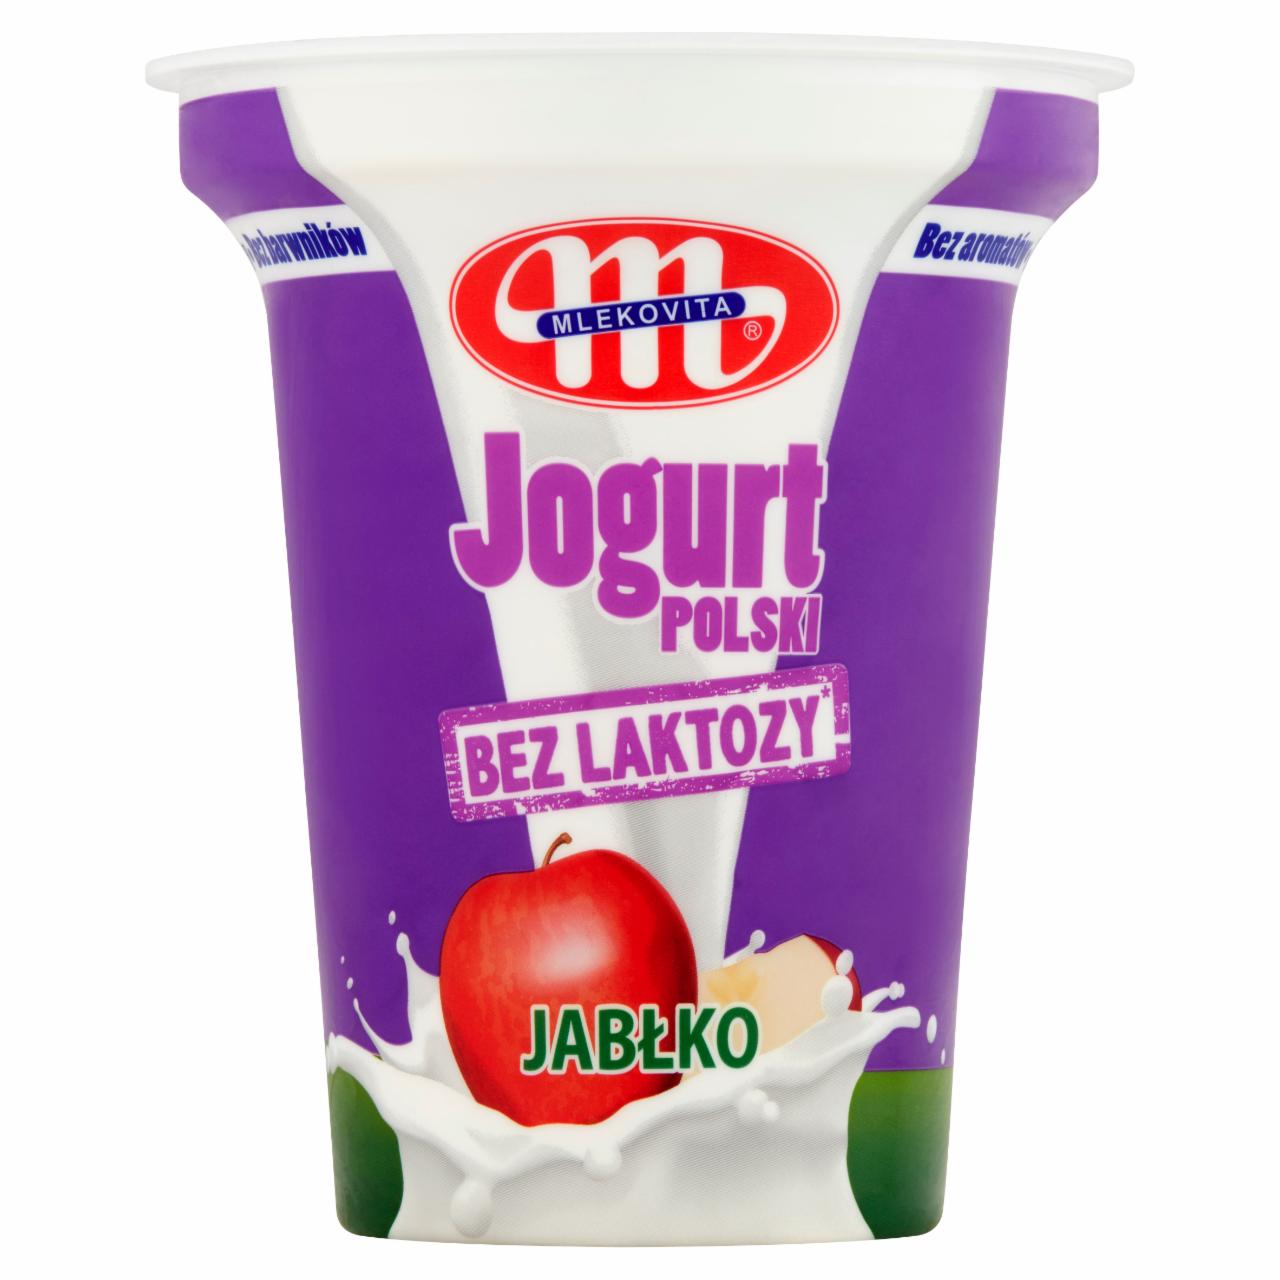 Zdjęcia - Mlekovita Jogurt Polski bez laktozy jabłko 310 g